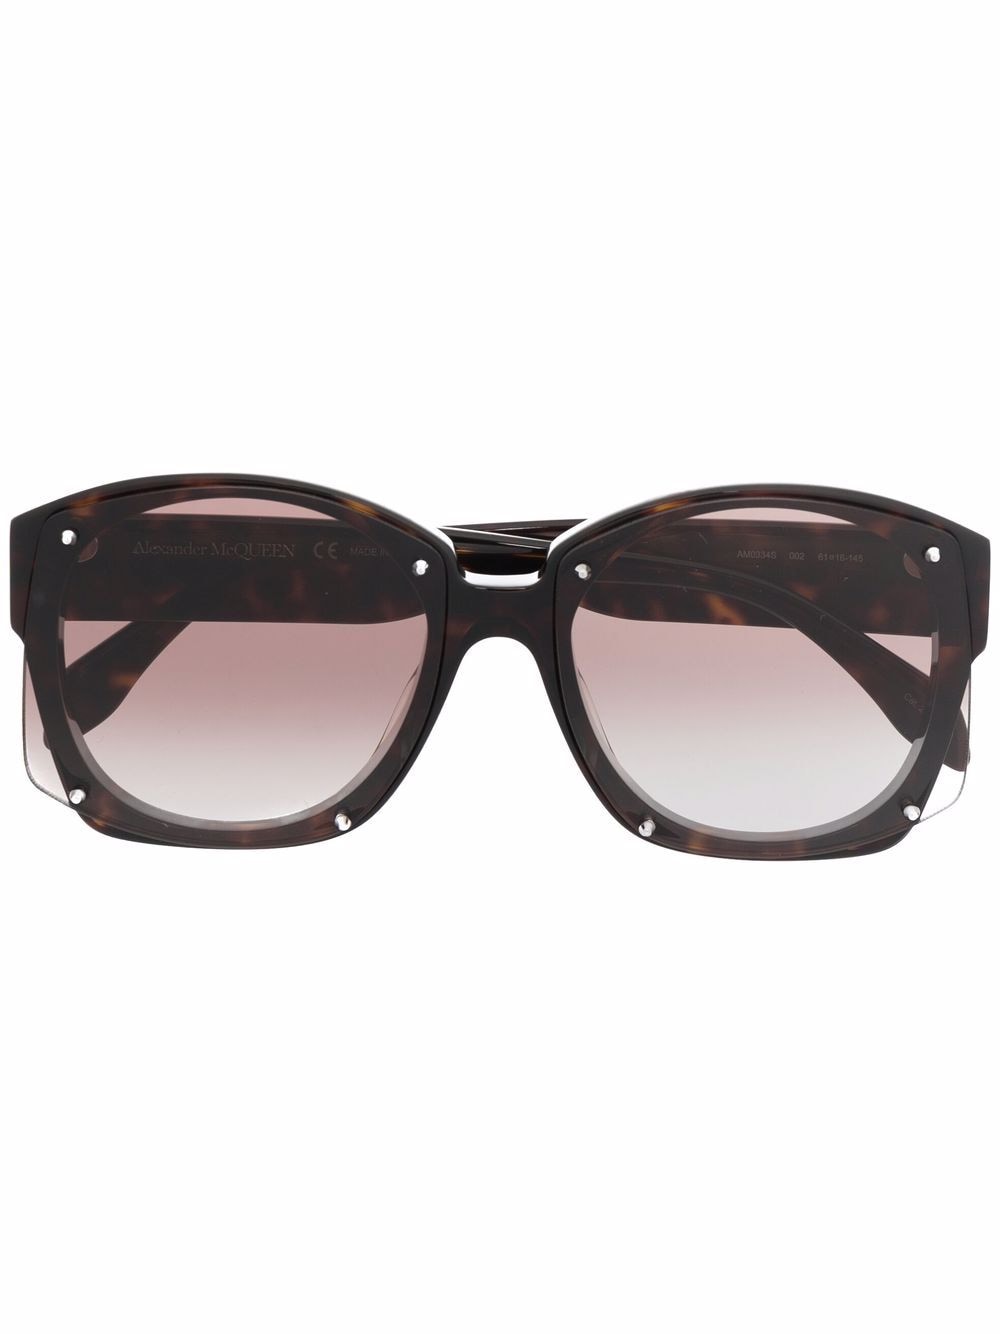 tortoiseshell-effect oversized-frame sunglasses